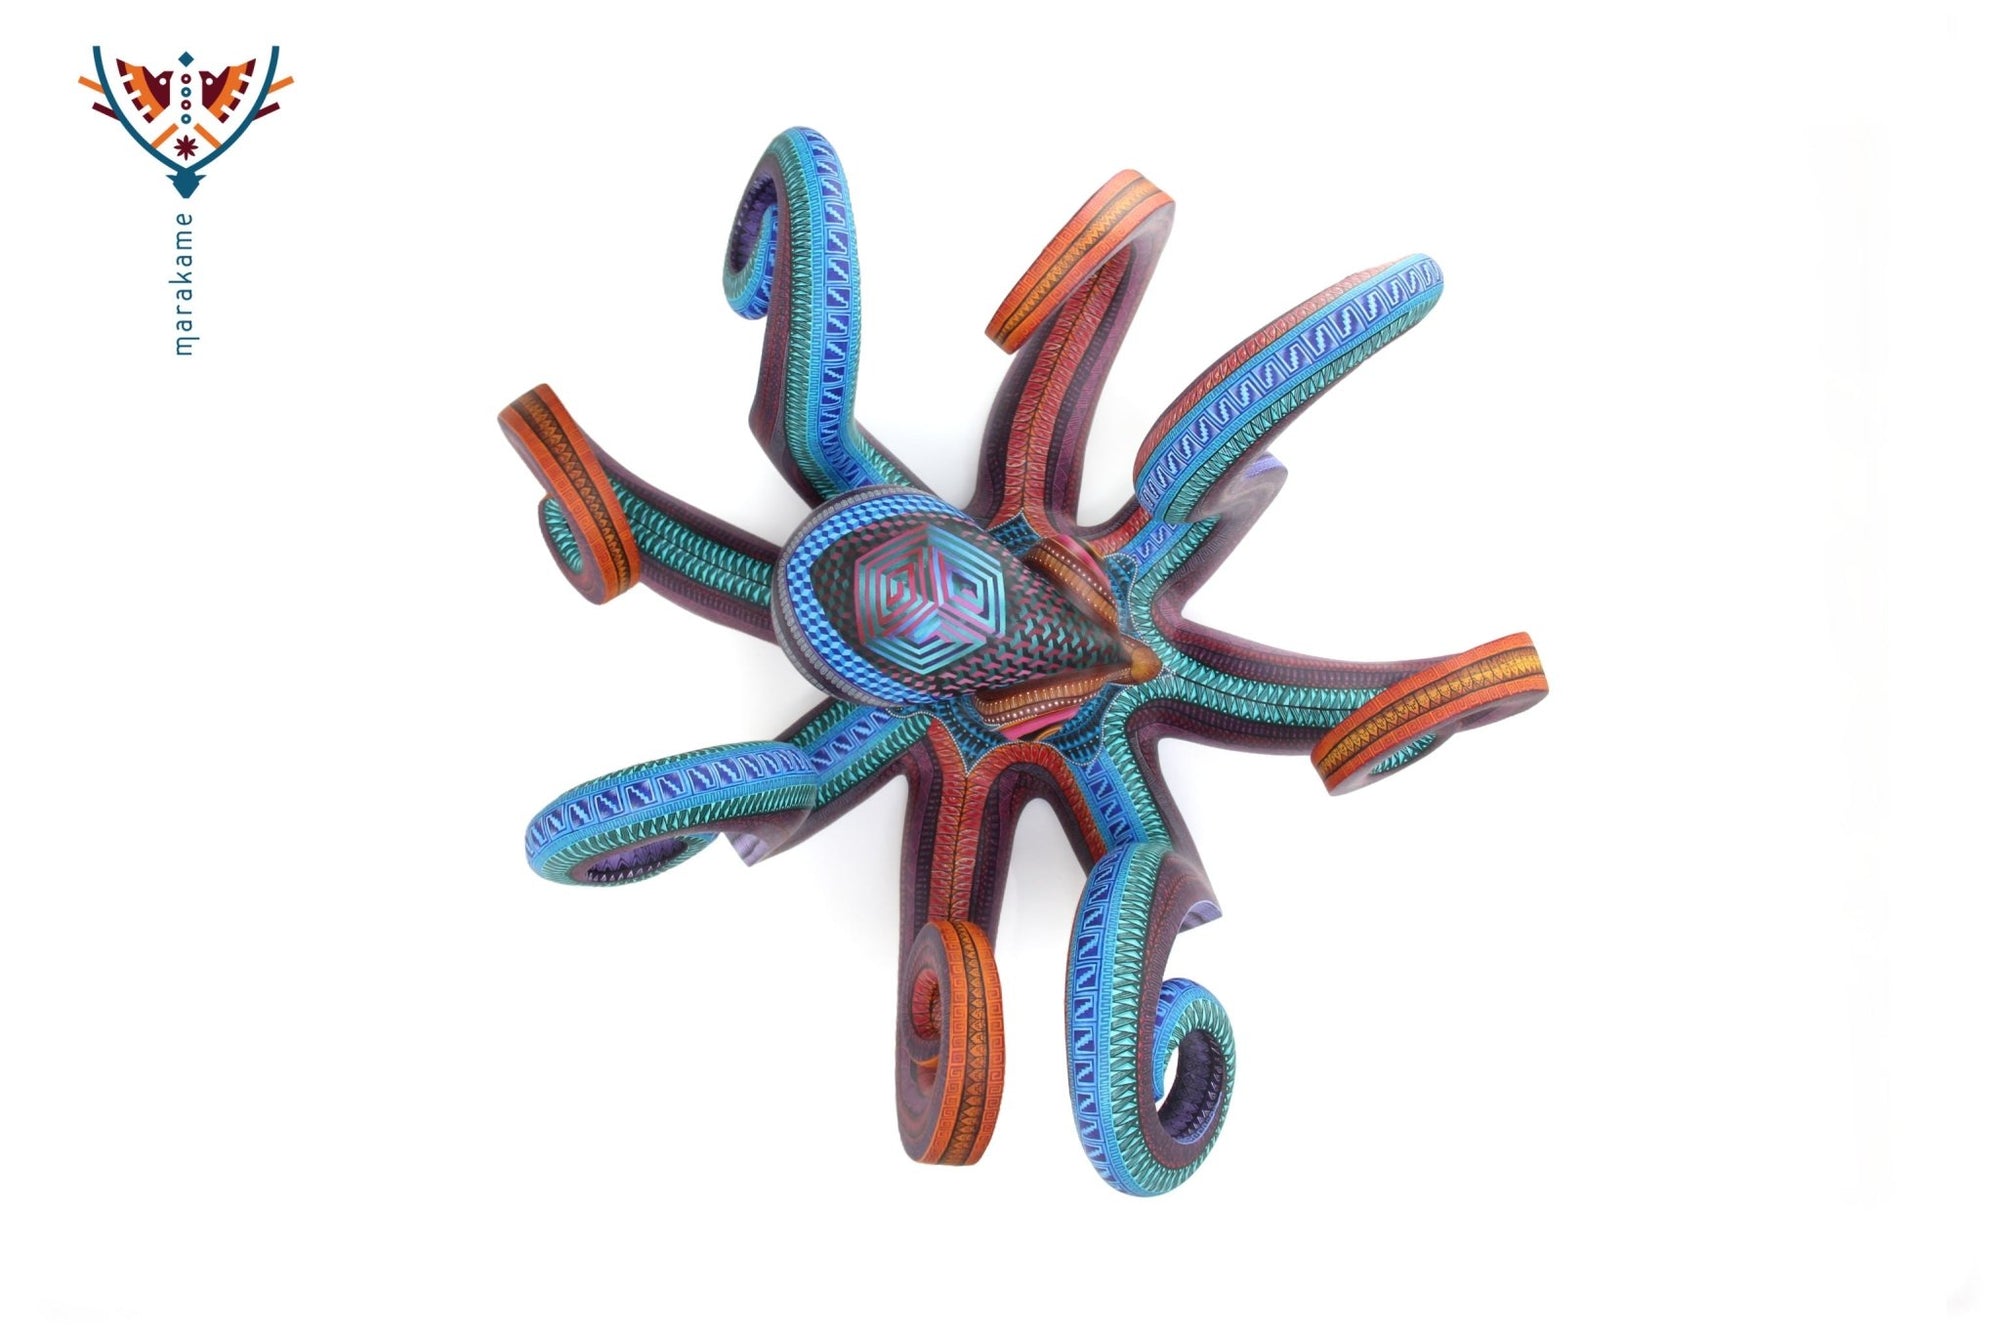 Oktopus Alebrije - Nisadó - Huichol Art - Marakame